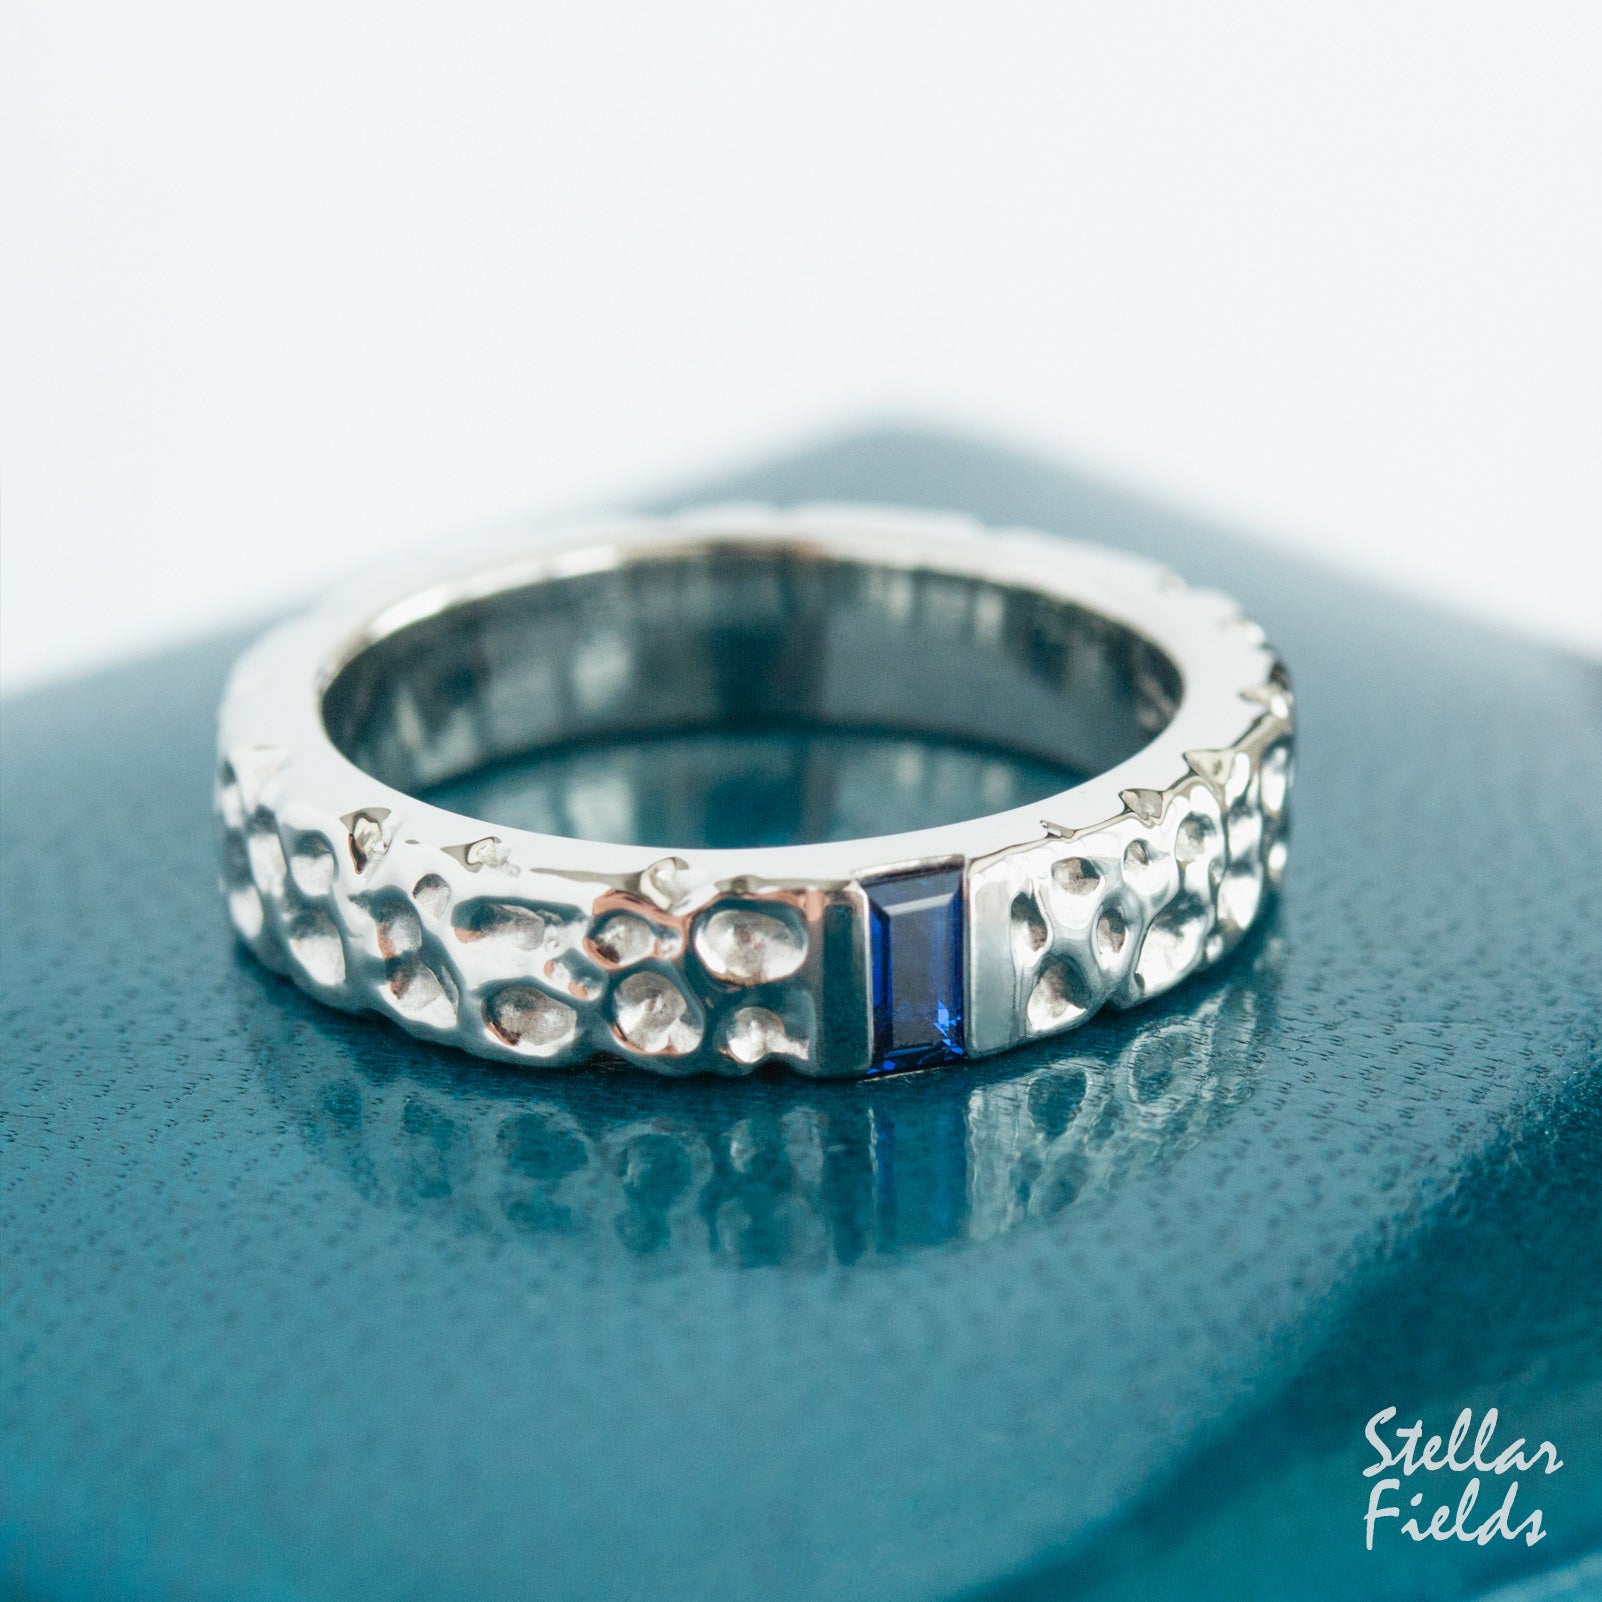 Modern Textured Wedding Band Cornflower Blue Sapphire Wedding Ring Unique OOAK Stellar Fields